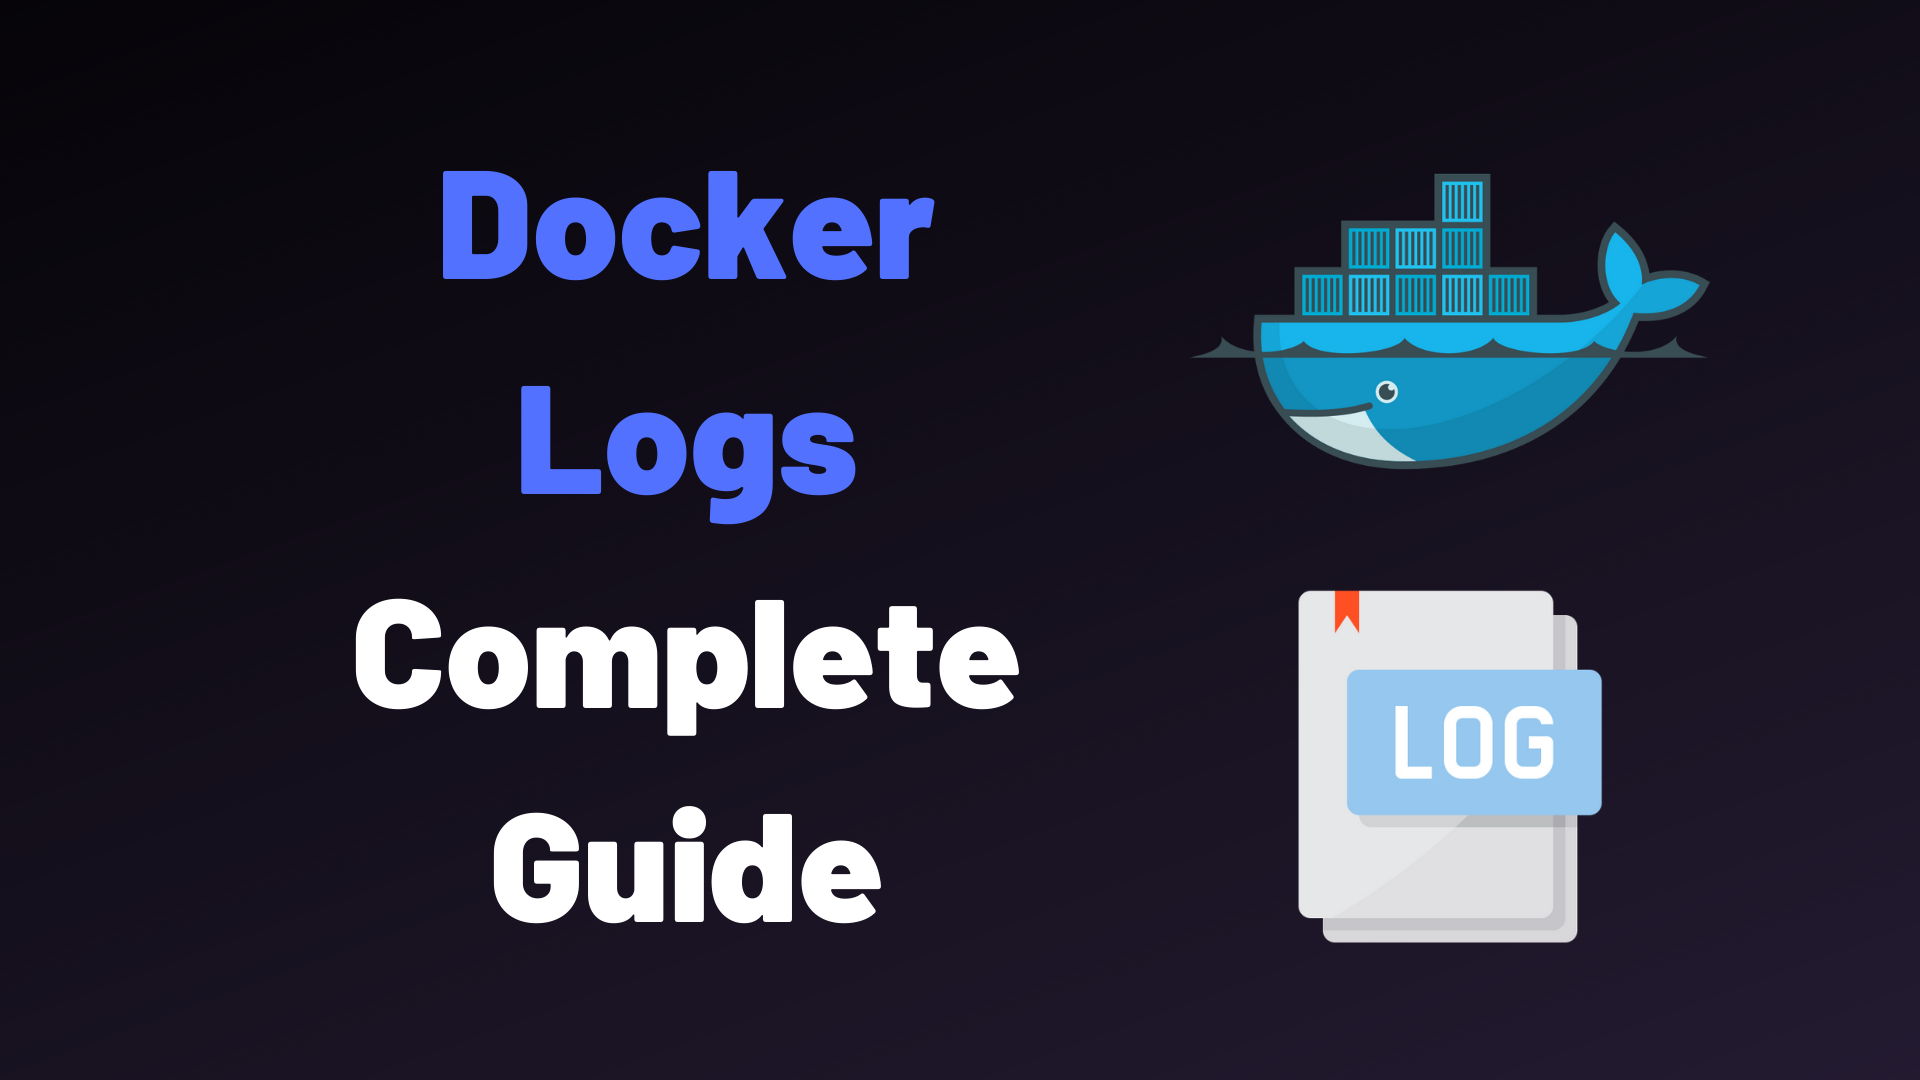 Docker Logs Complete Guide